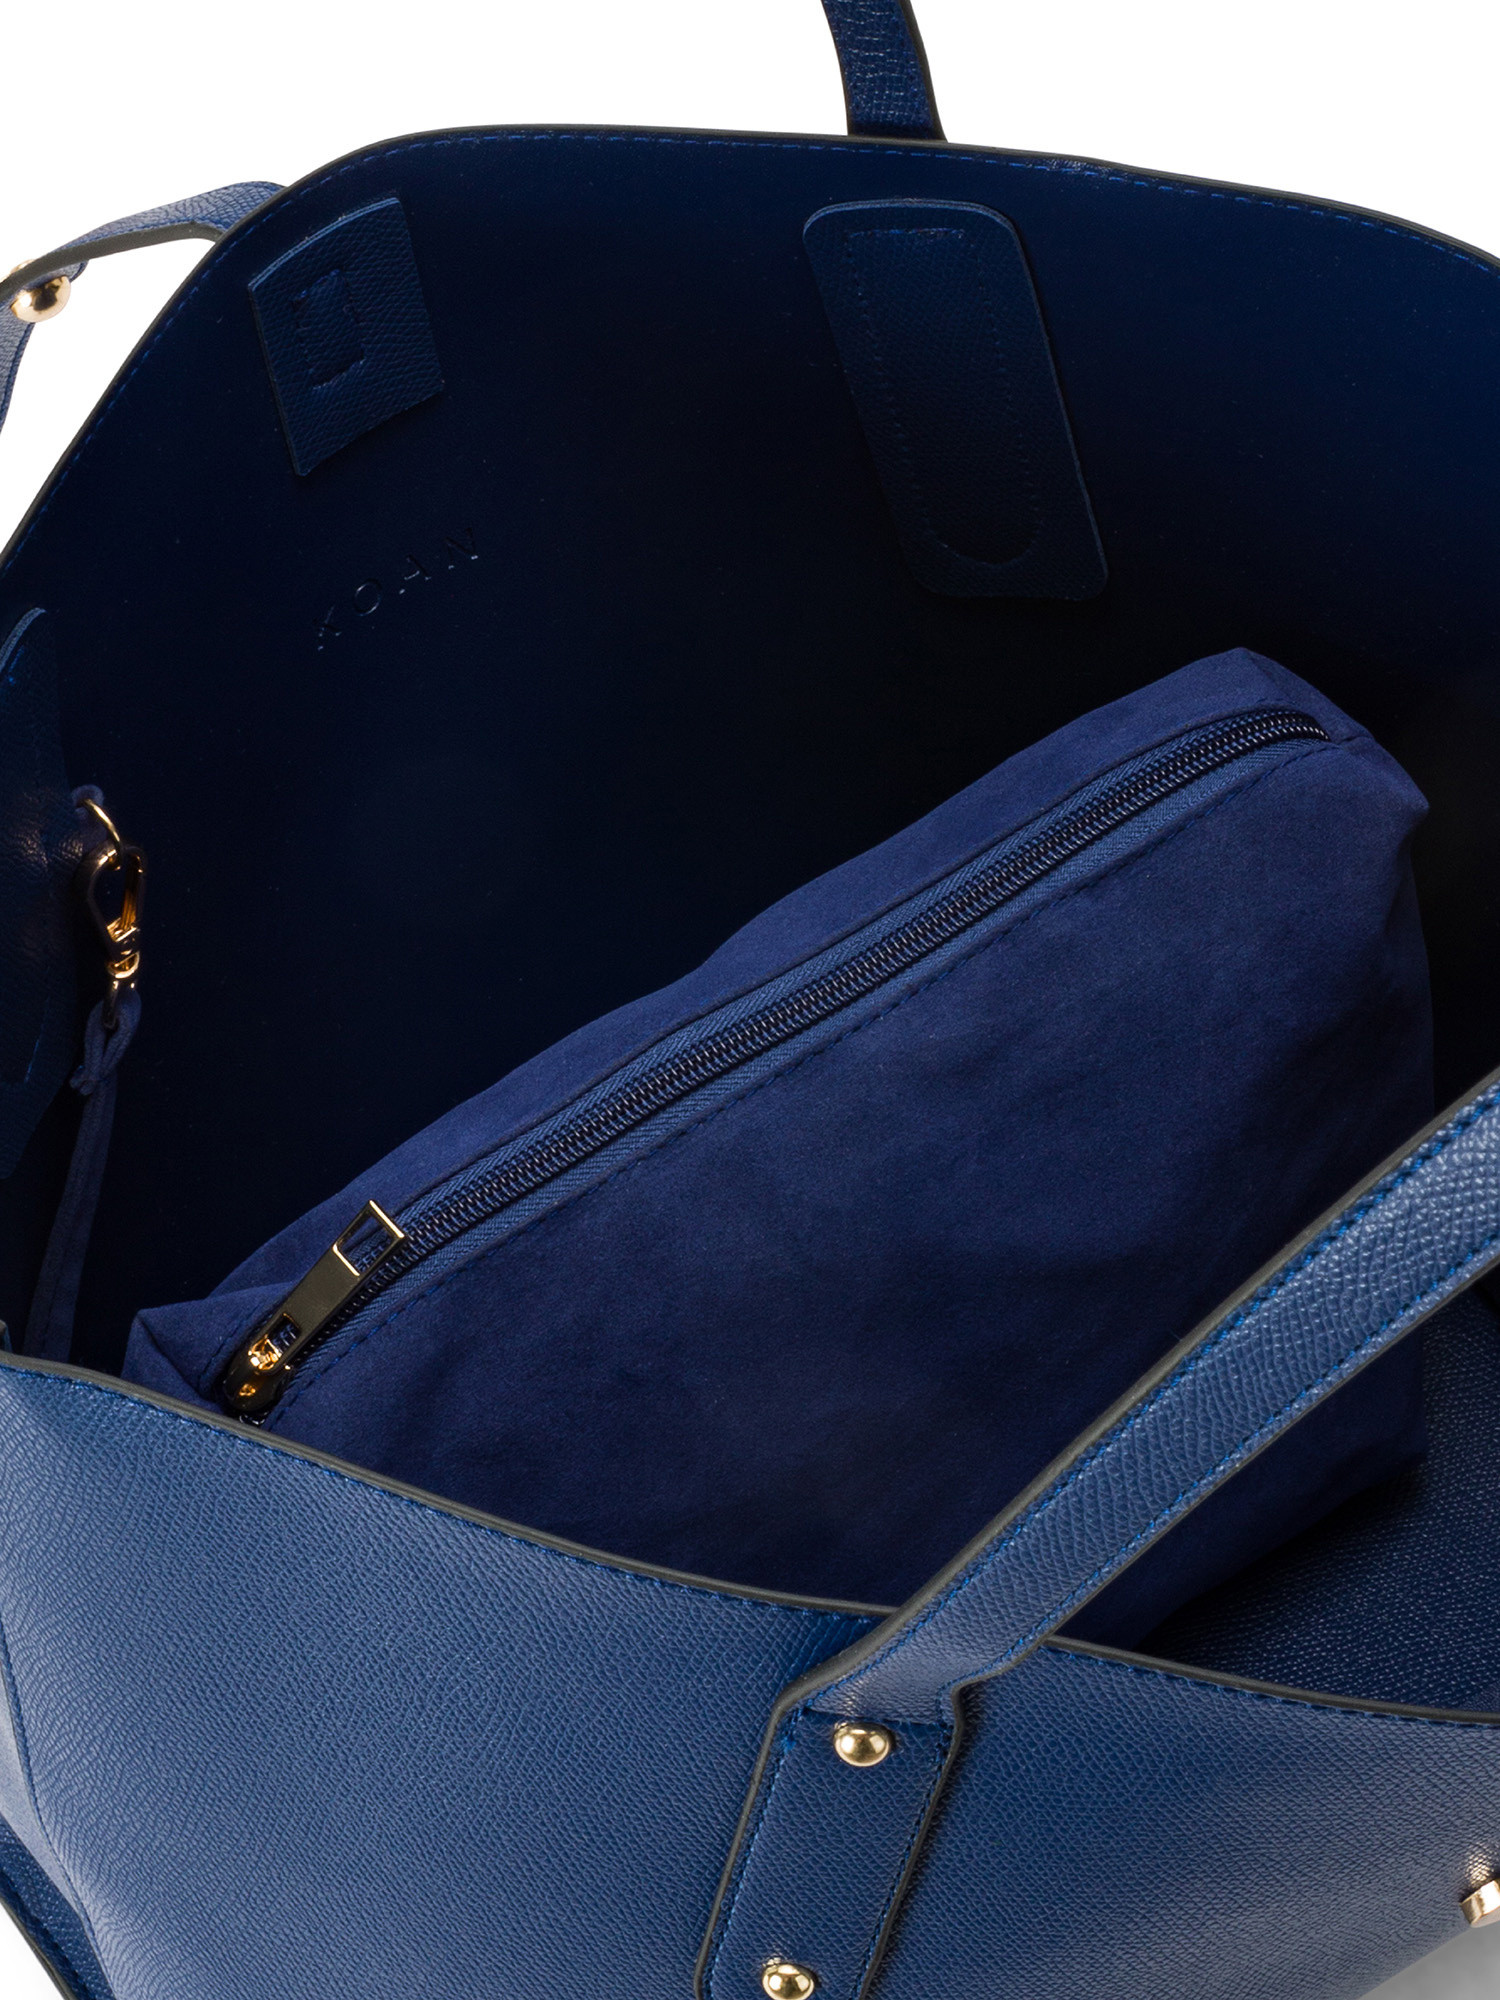 Koan - Shopping bag, Royal Blue, large image number 2